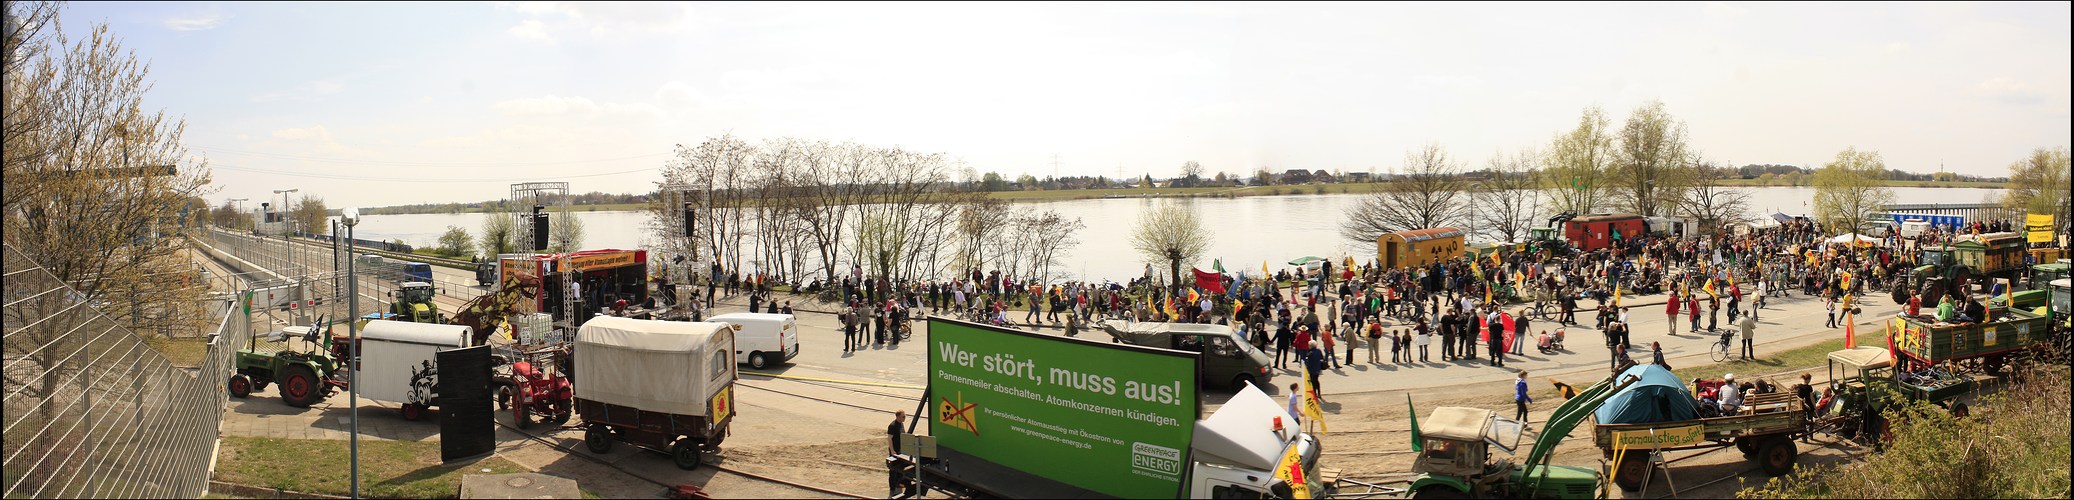 Demo am AKW in Krümmel             ´/ zum scrollen